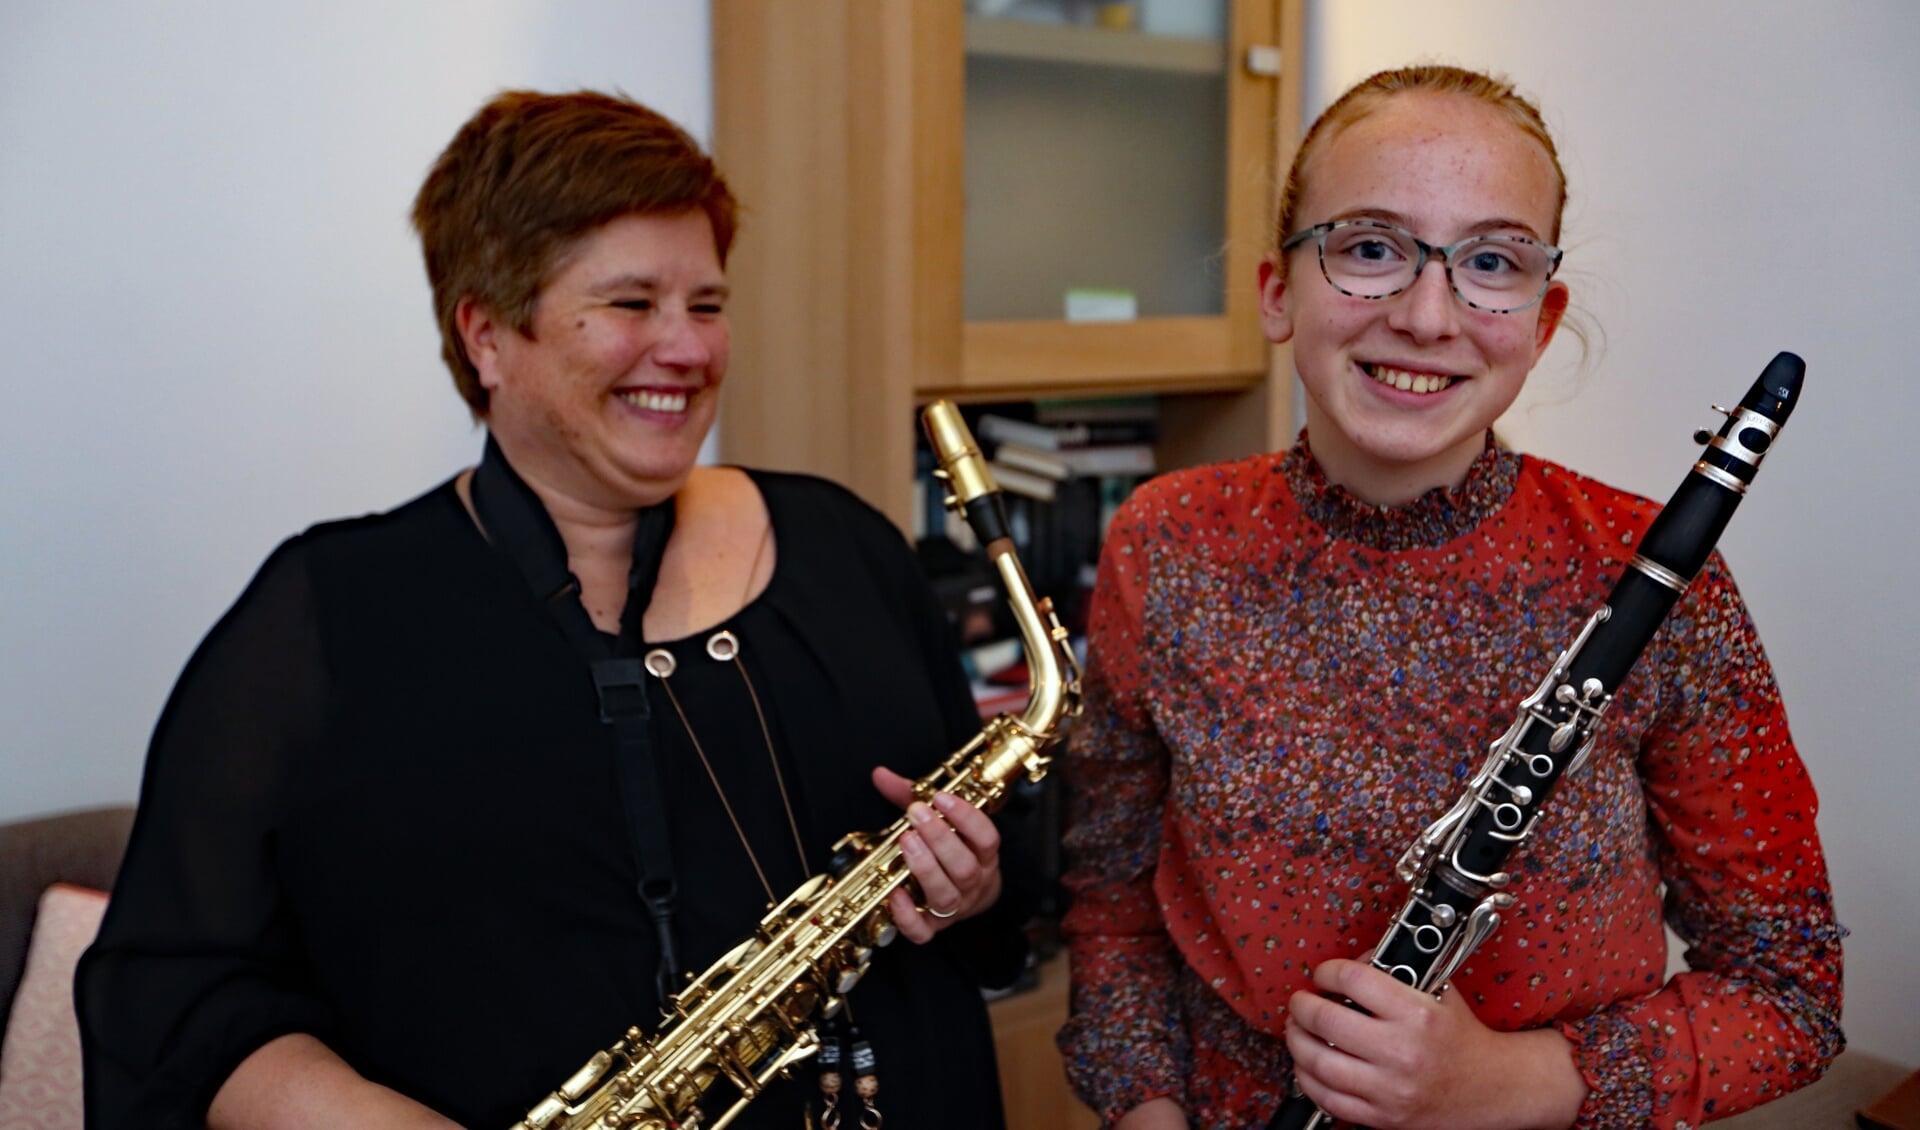 Maureen en Janine spelen samen bij de harmonie Sint-Caecilia in Lutjebroek.